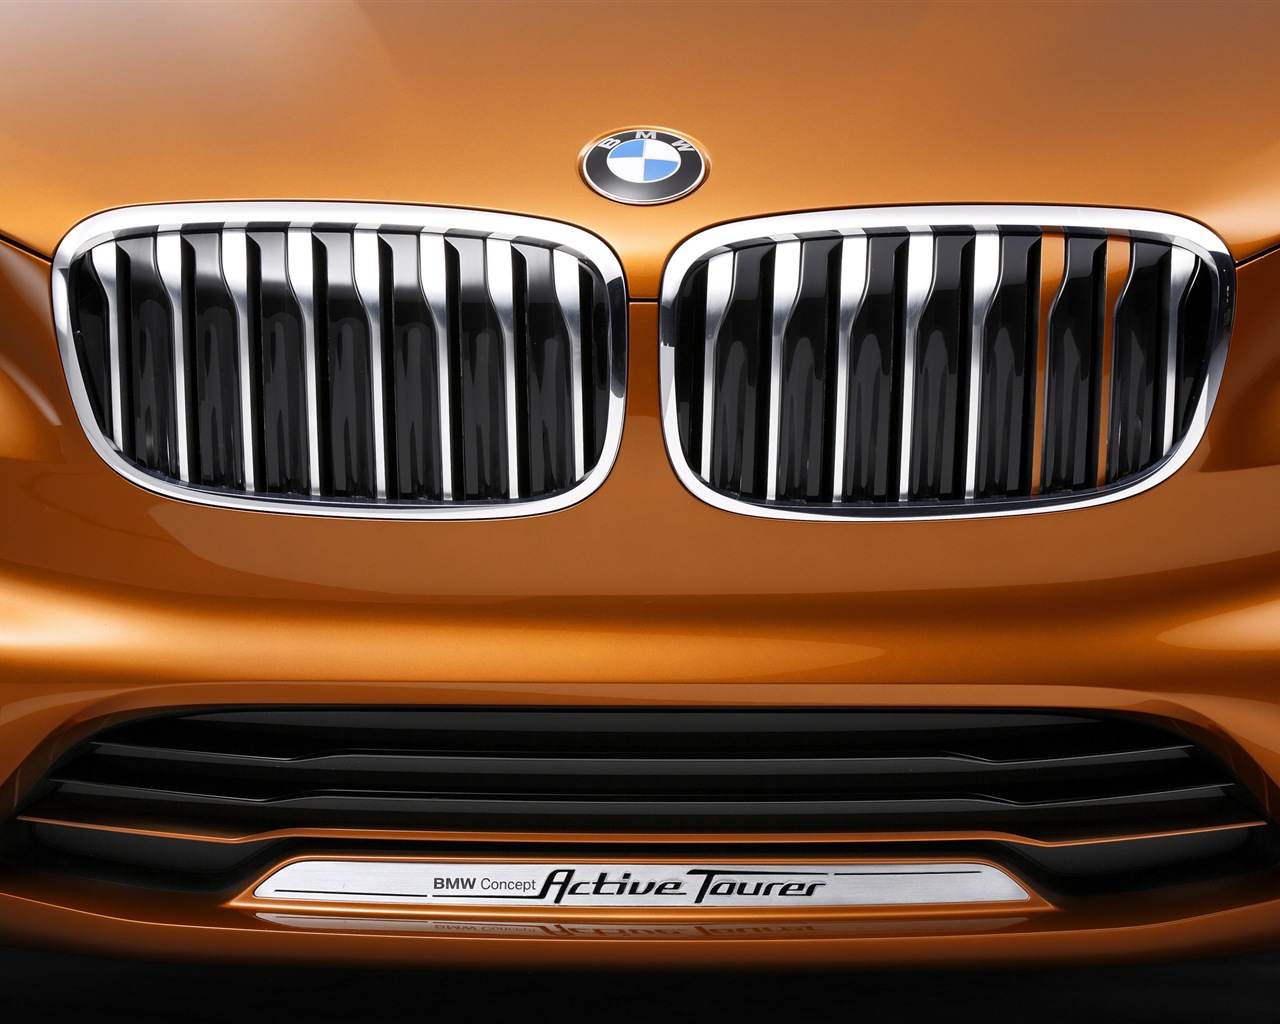 2013 BMW Concept Active Tourer 宝马旅行车 高清壁纸15 - 1280x1024